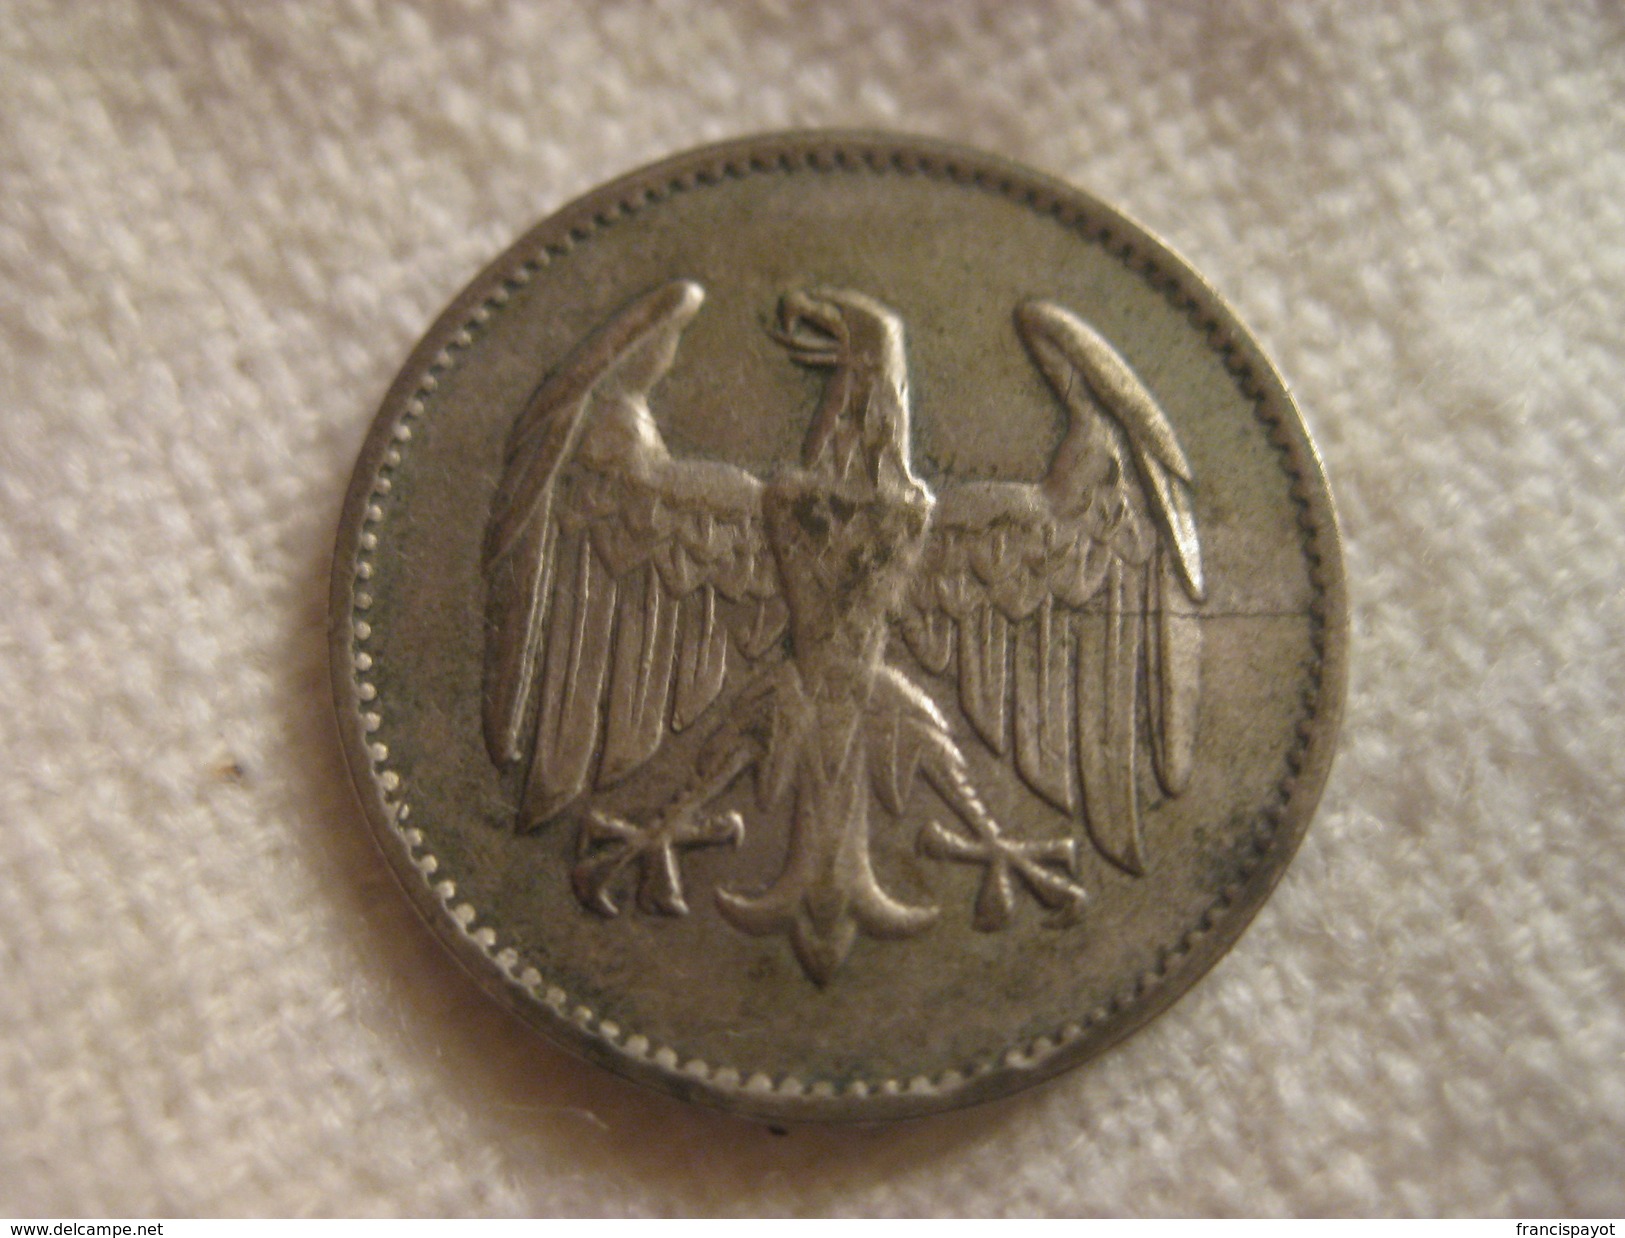 1 Reichmark 1924 F - 1 Mark & 1 Reichsmark